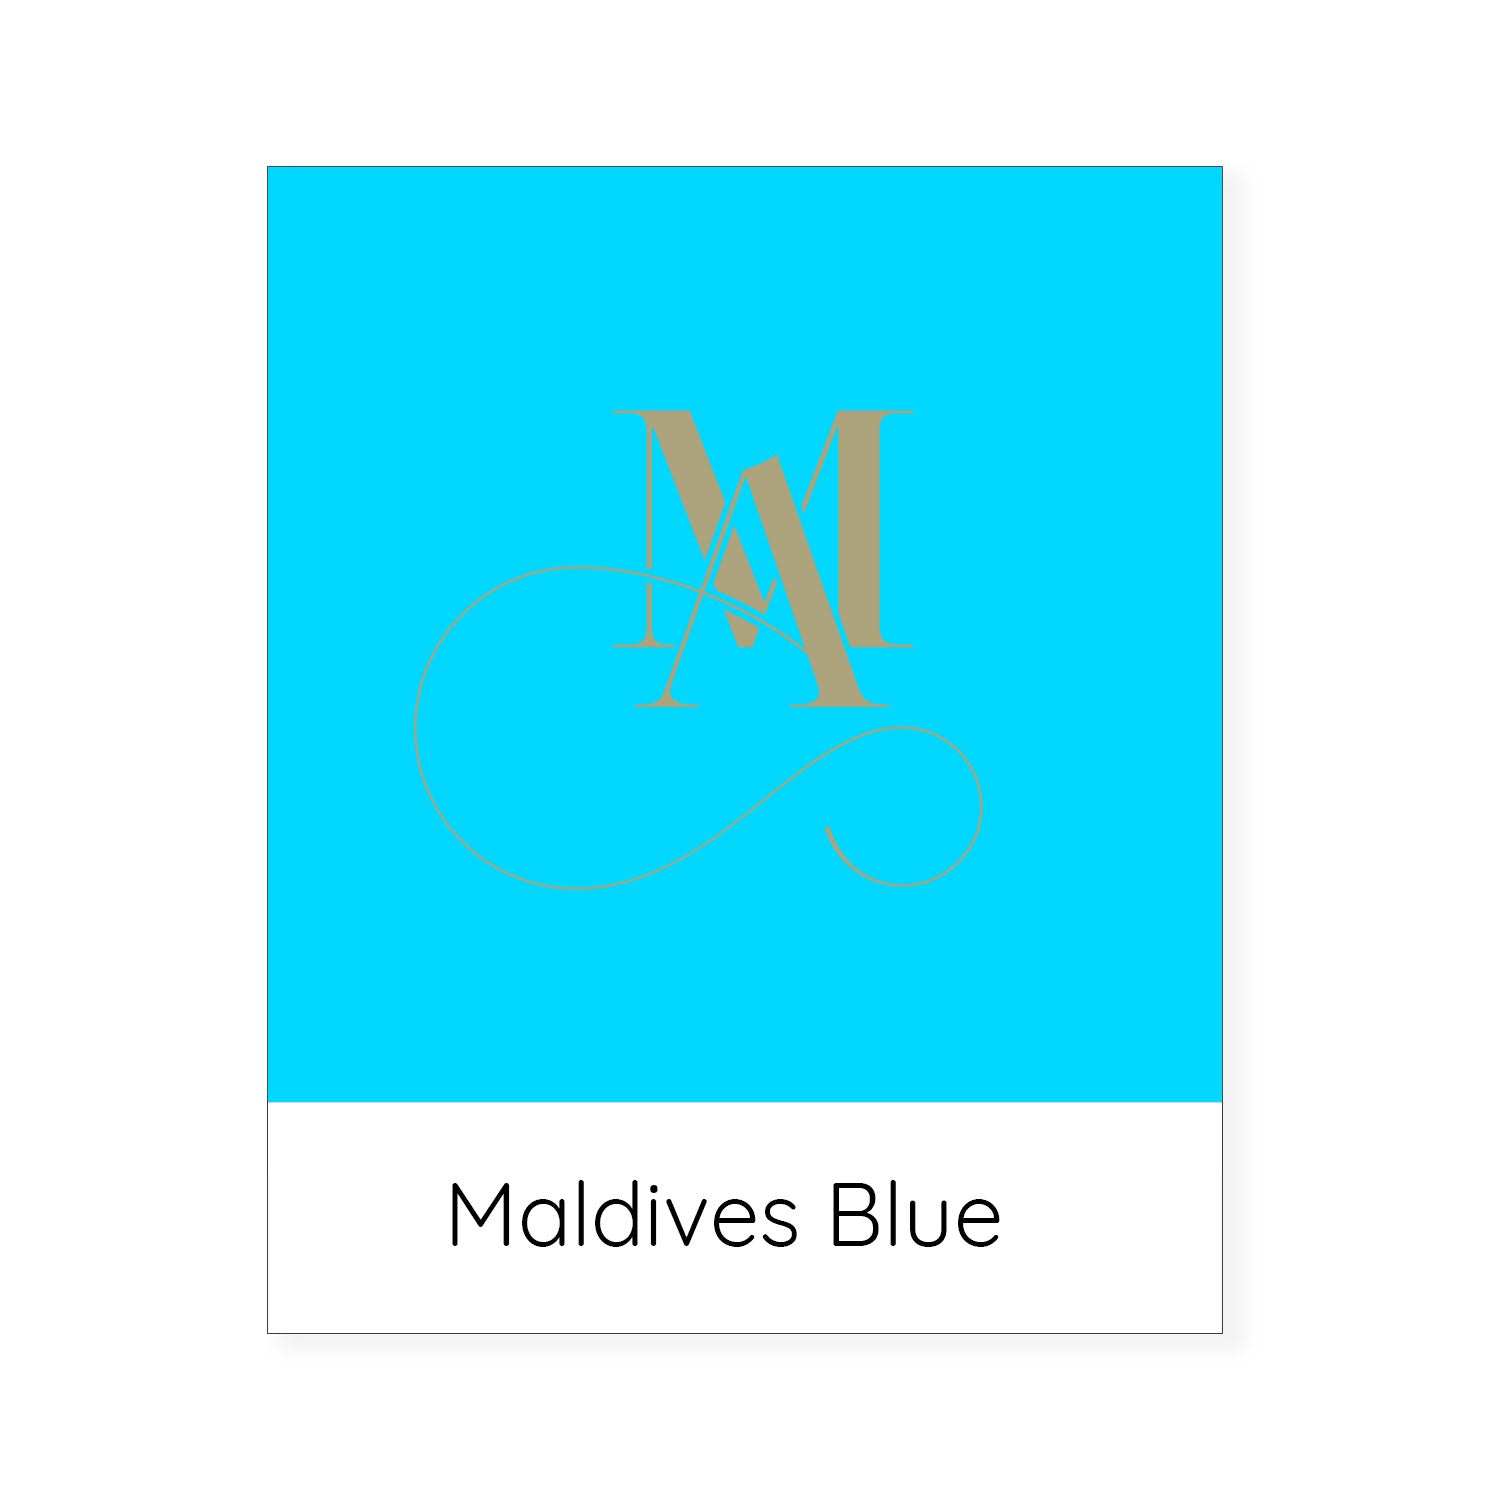 Maldives blue colour swatch.